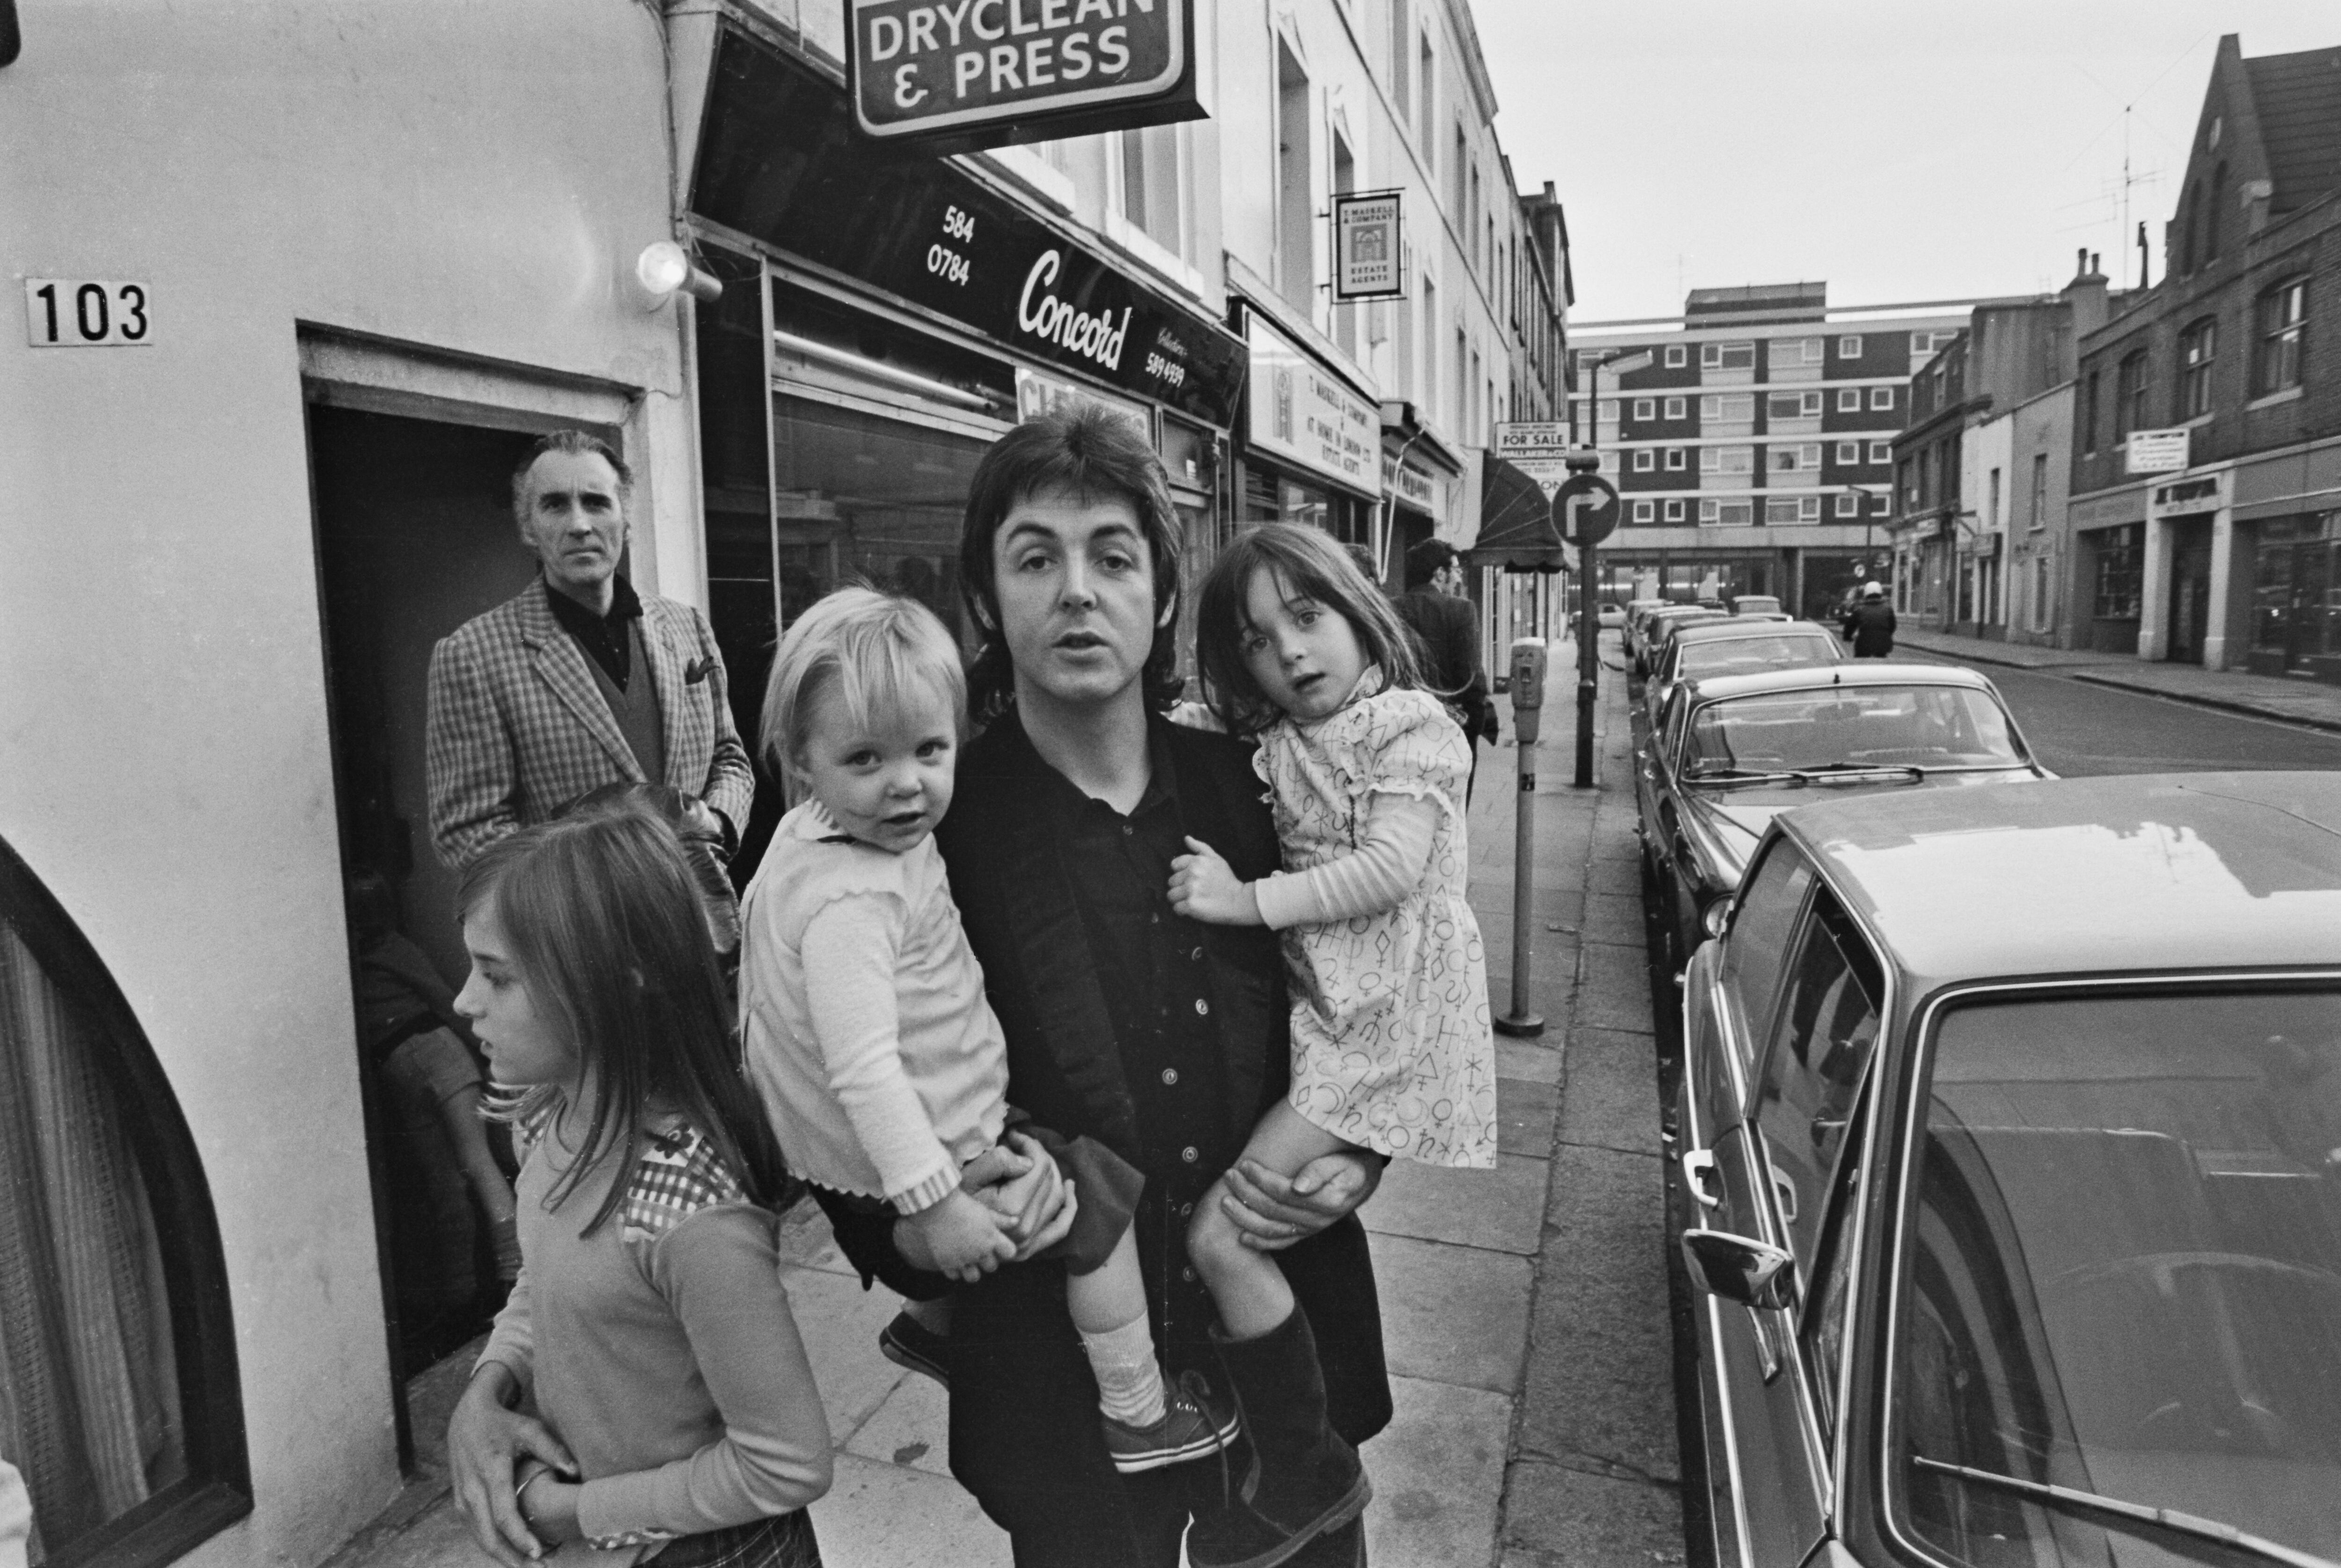 Paul McCartney con sus hijas en Londres en 1973. Al fondo, Christopher Lee.